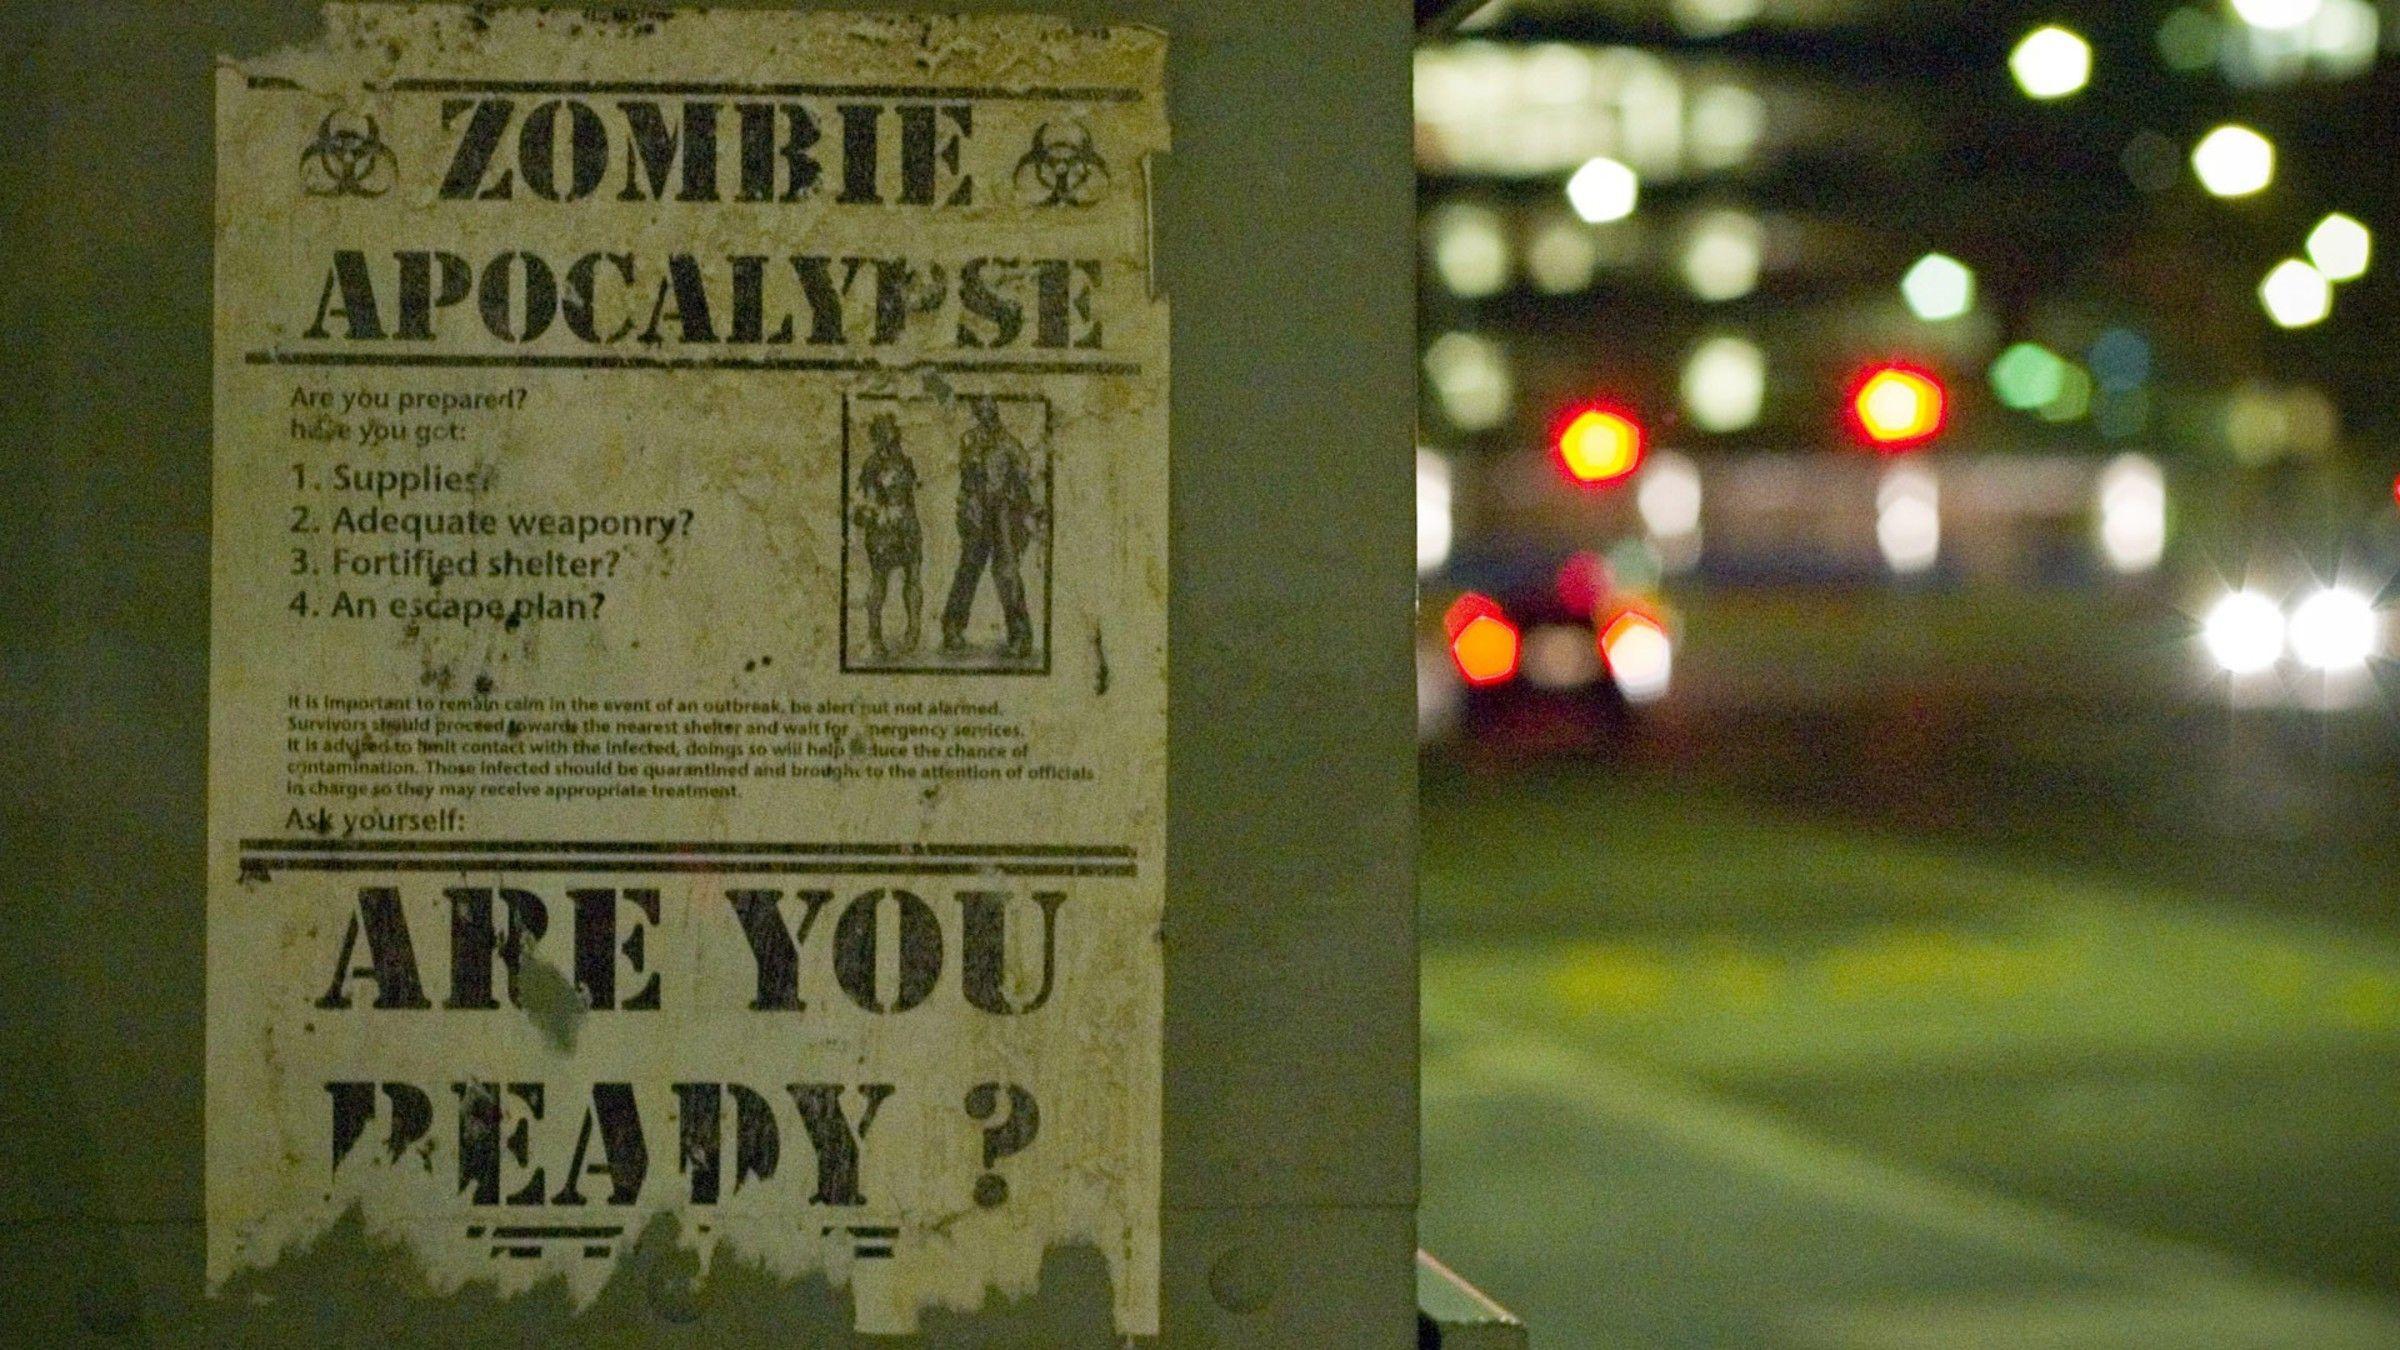 Zombie apocalypse wallpaper. PC